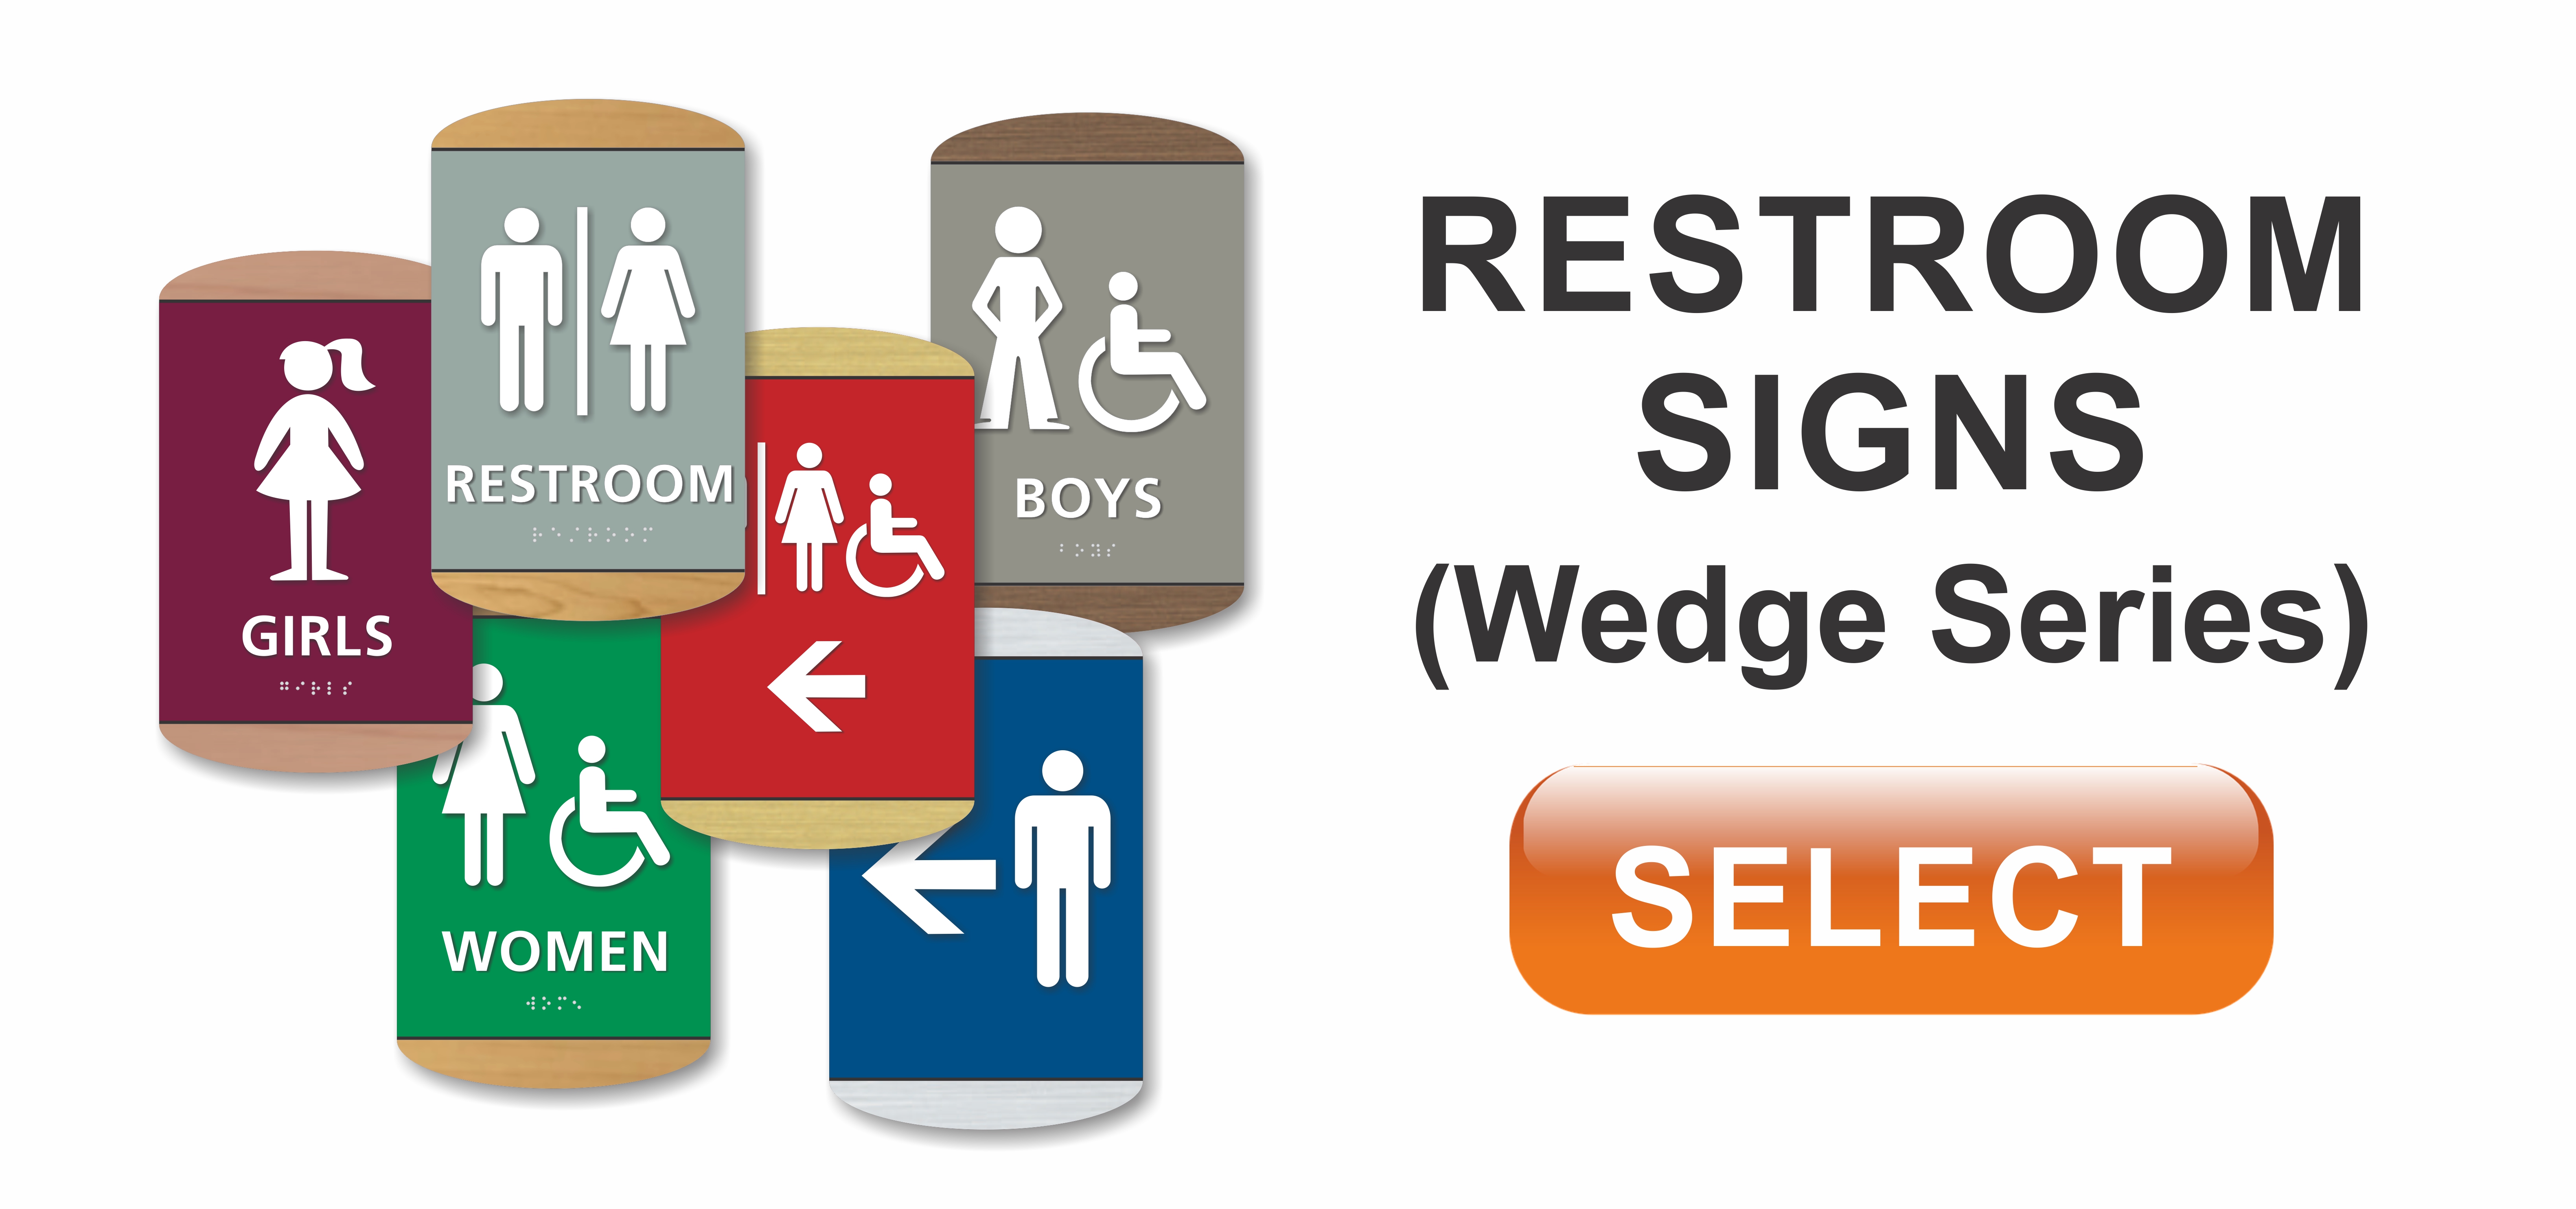 wedge series ADA braille restroom signs